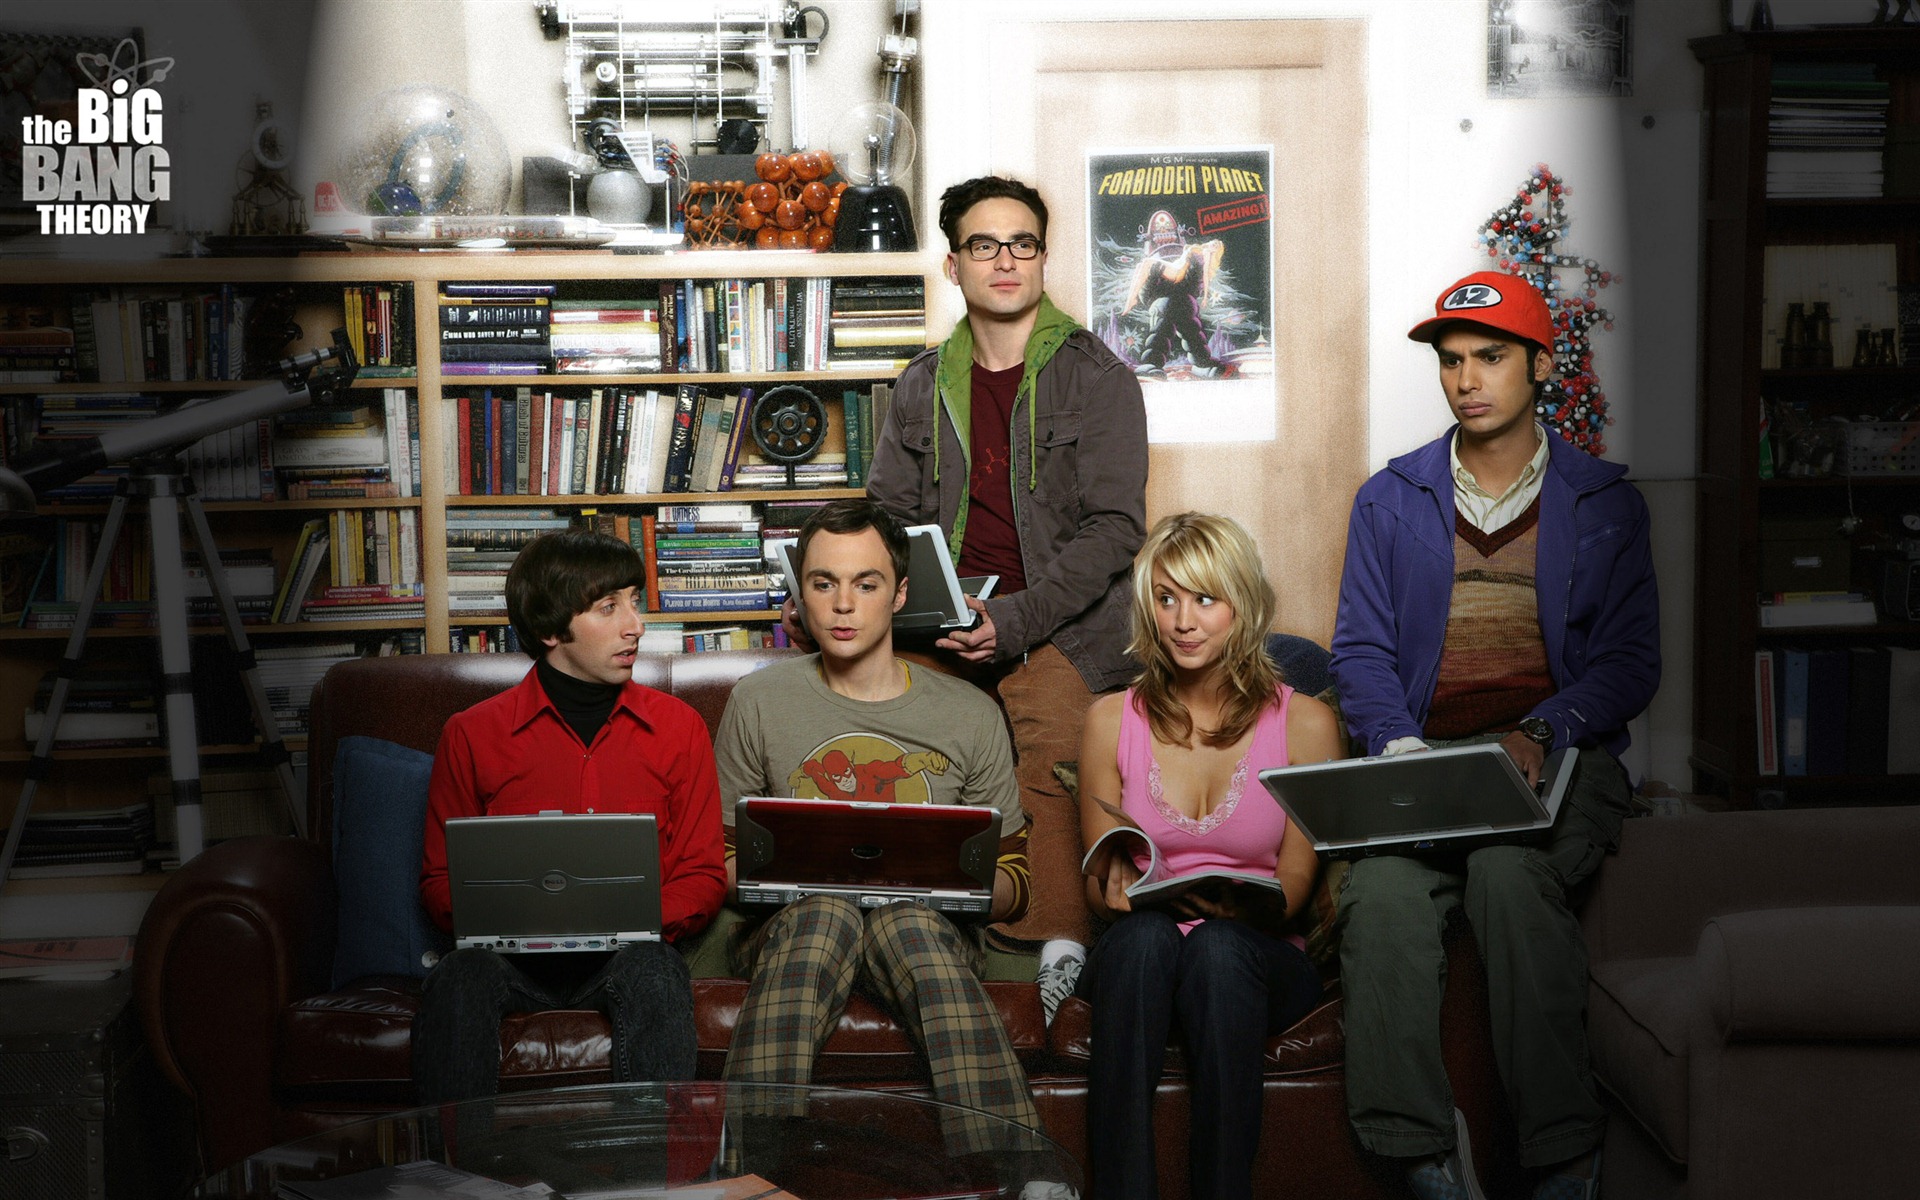 The Big Bang Theory 生活大爆炸 电视剧高清壁纸19 - 1920x1200